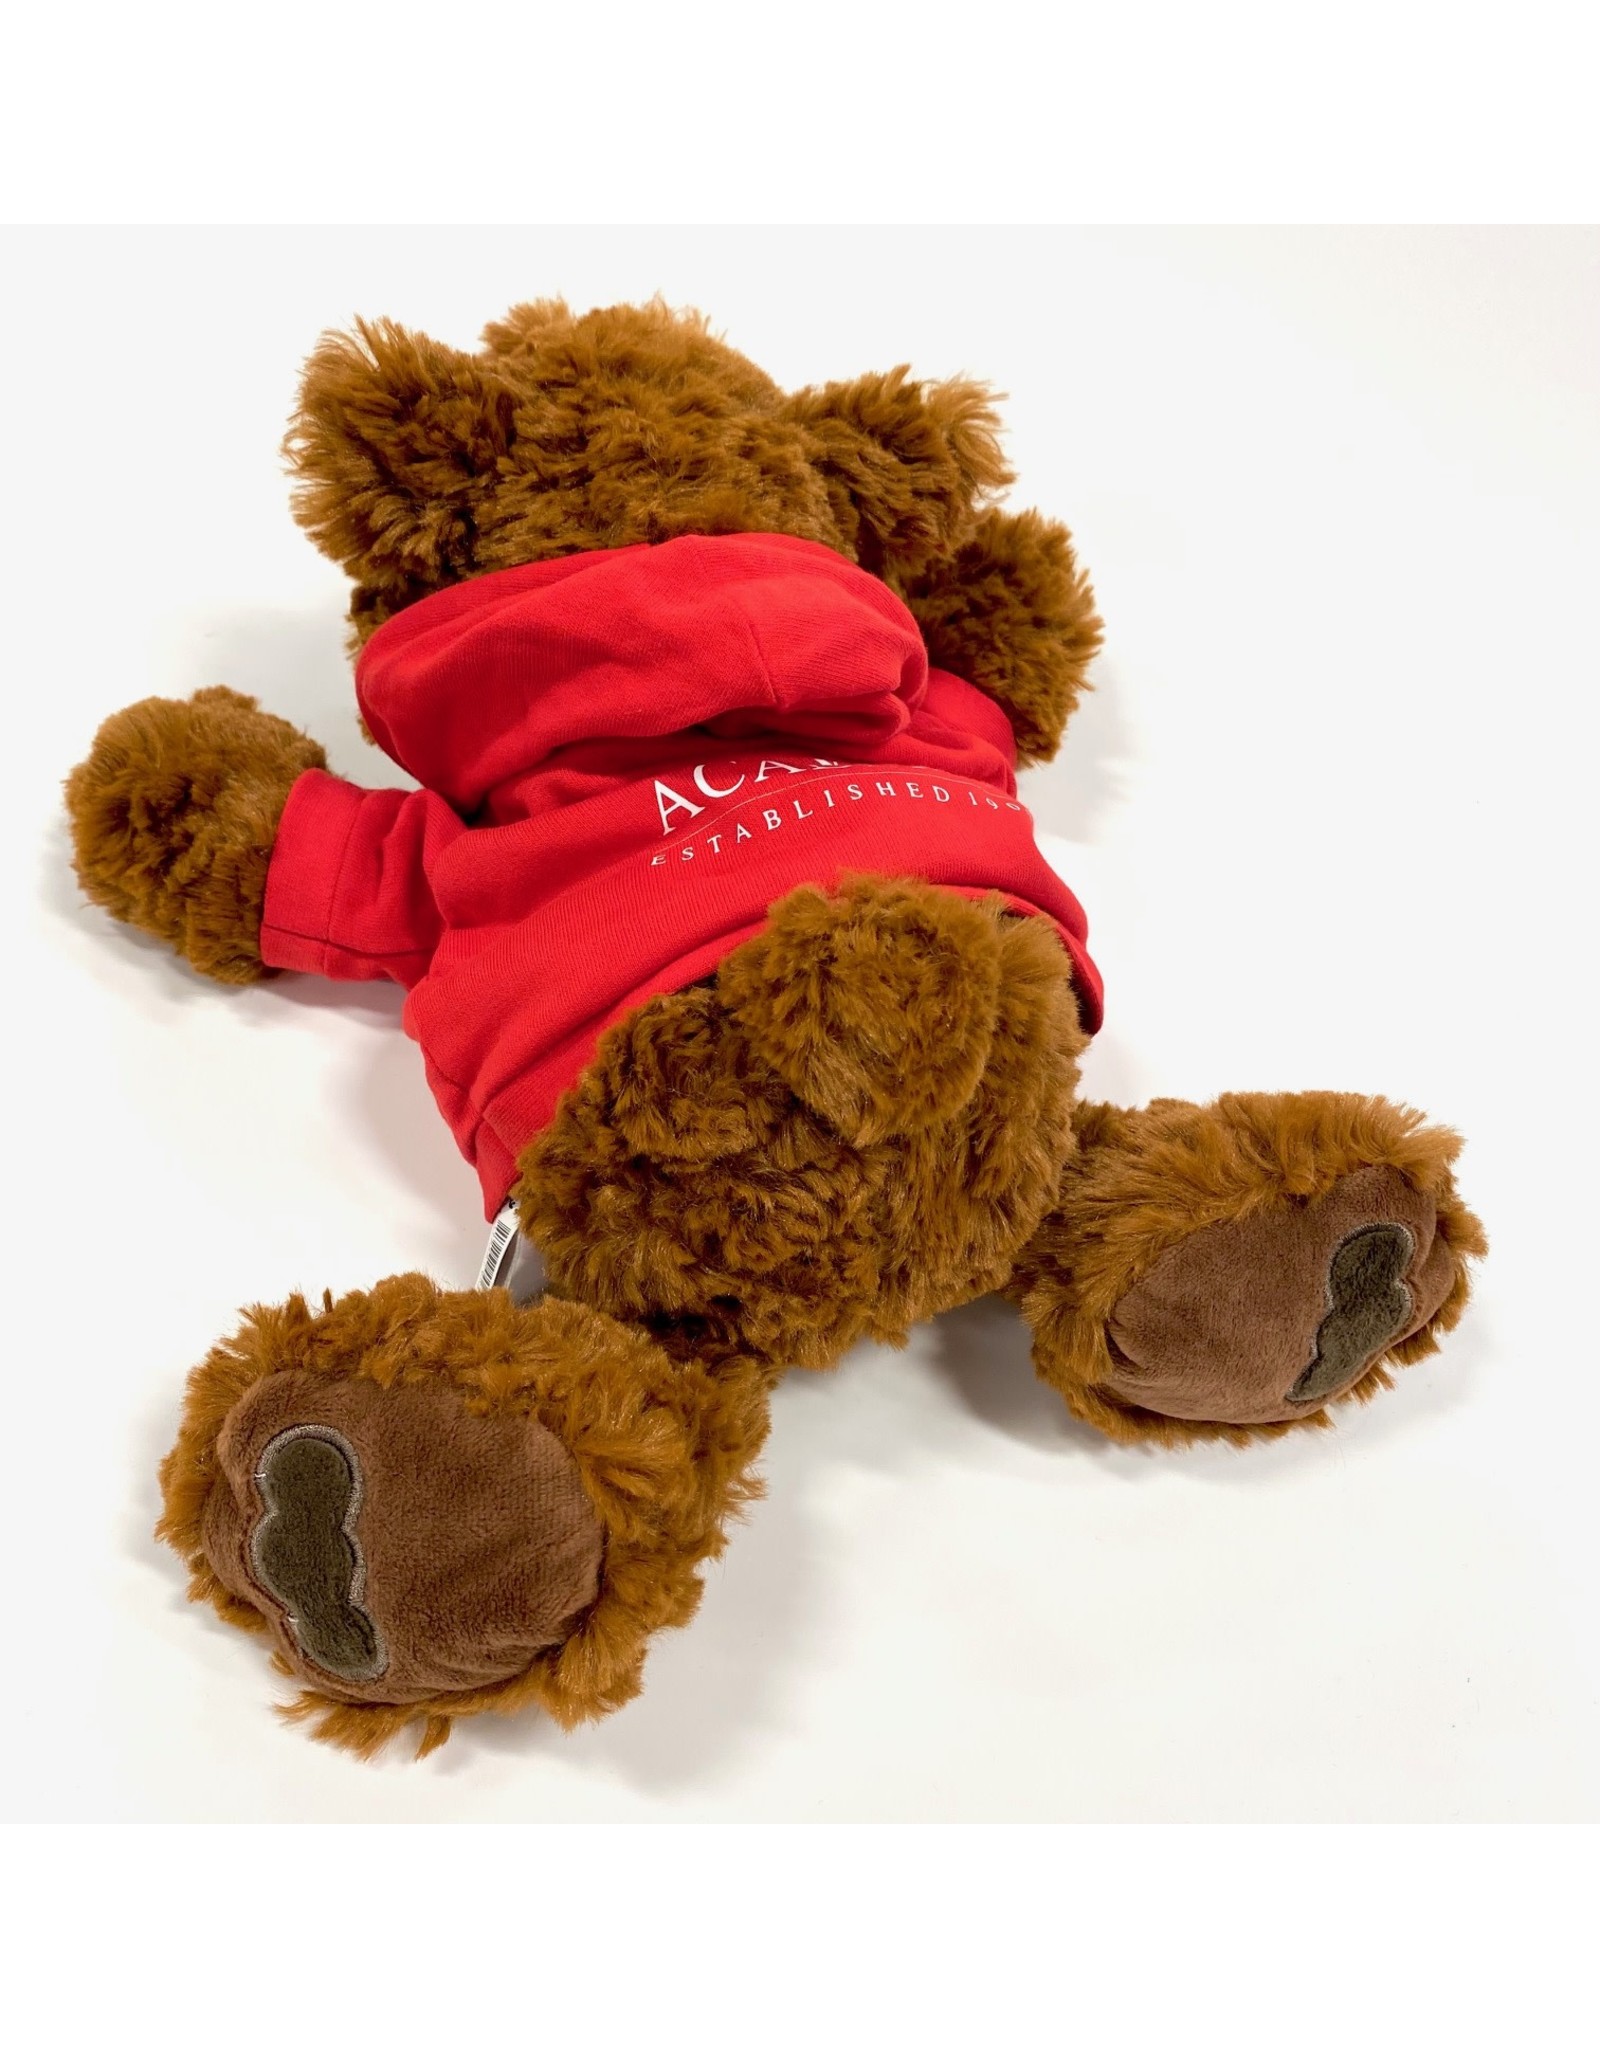 Mascot Factory Plush Dark Brown Ricky Bear w/ Red Hoody